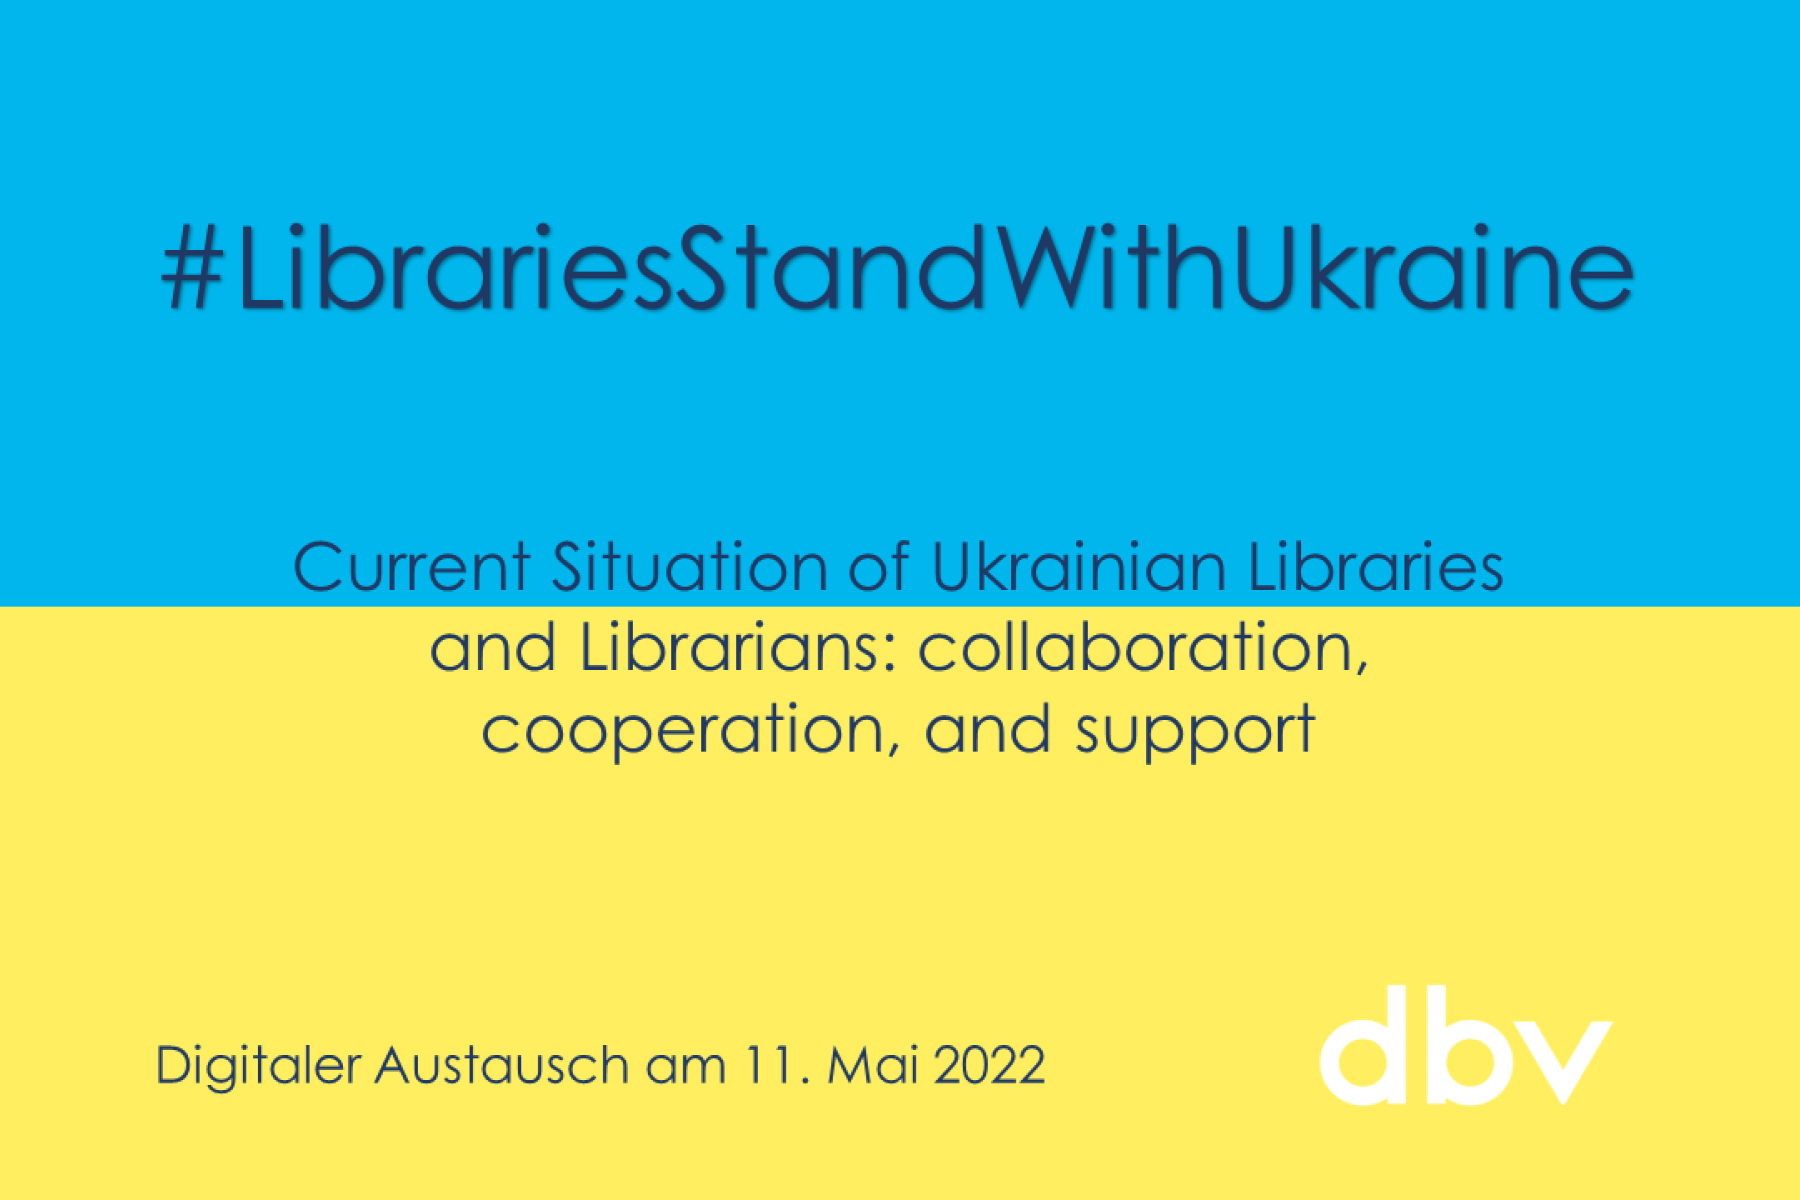 Austausch mit dem Ukrainischen Bibliotheksverband am 11. Mai 2022.